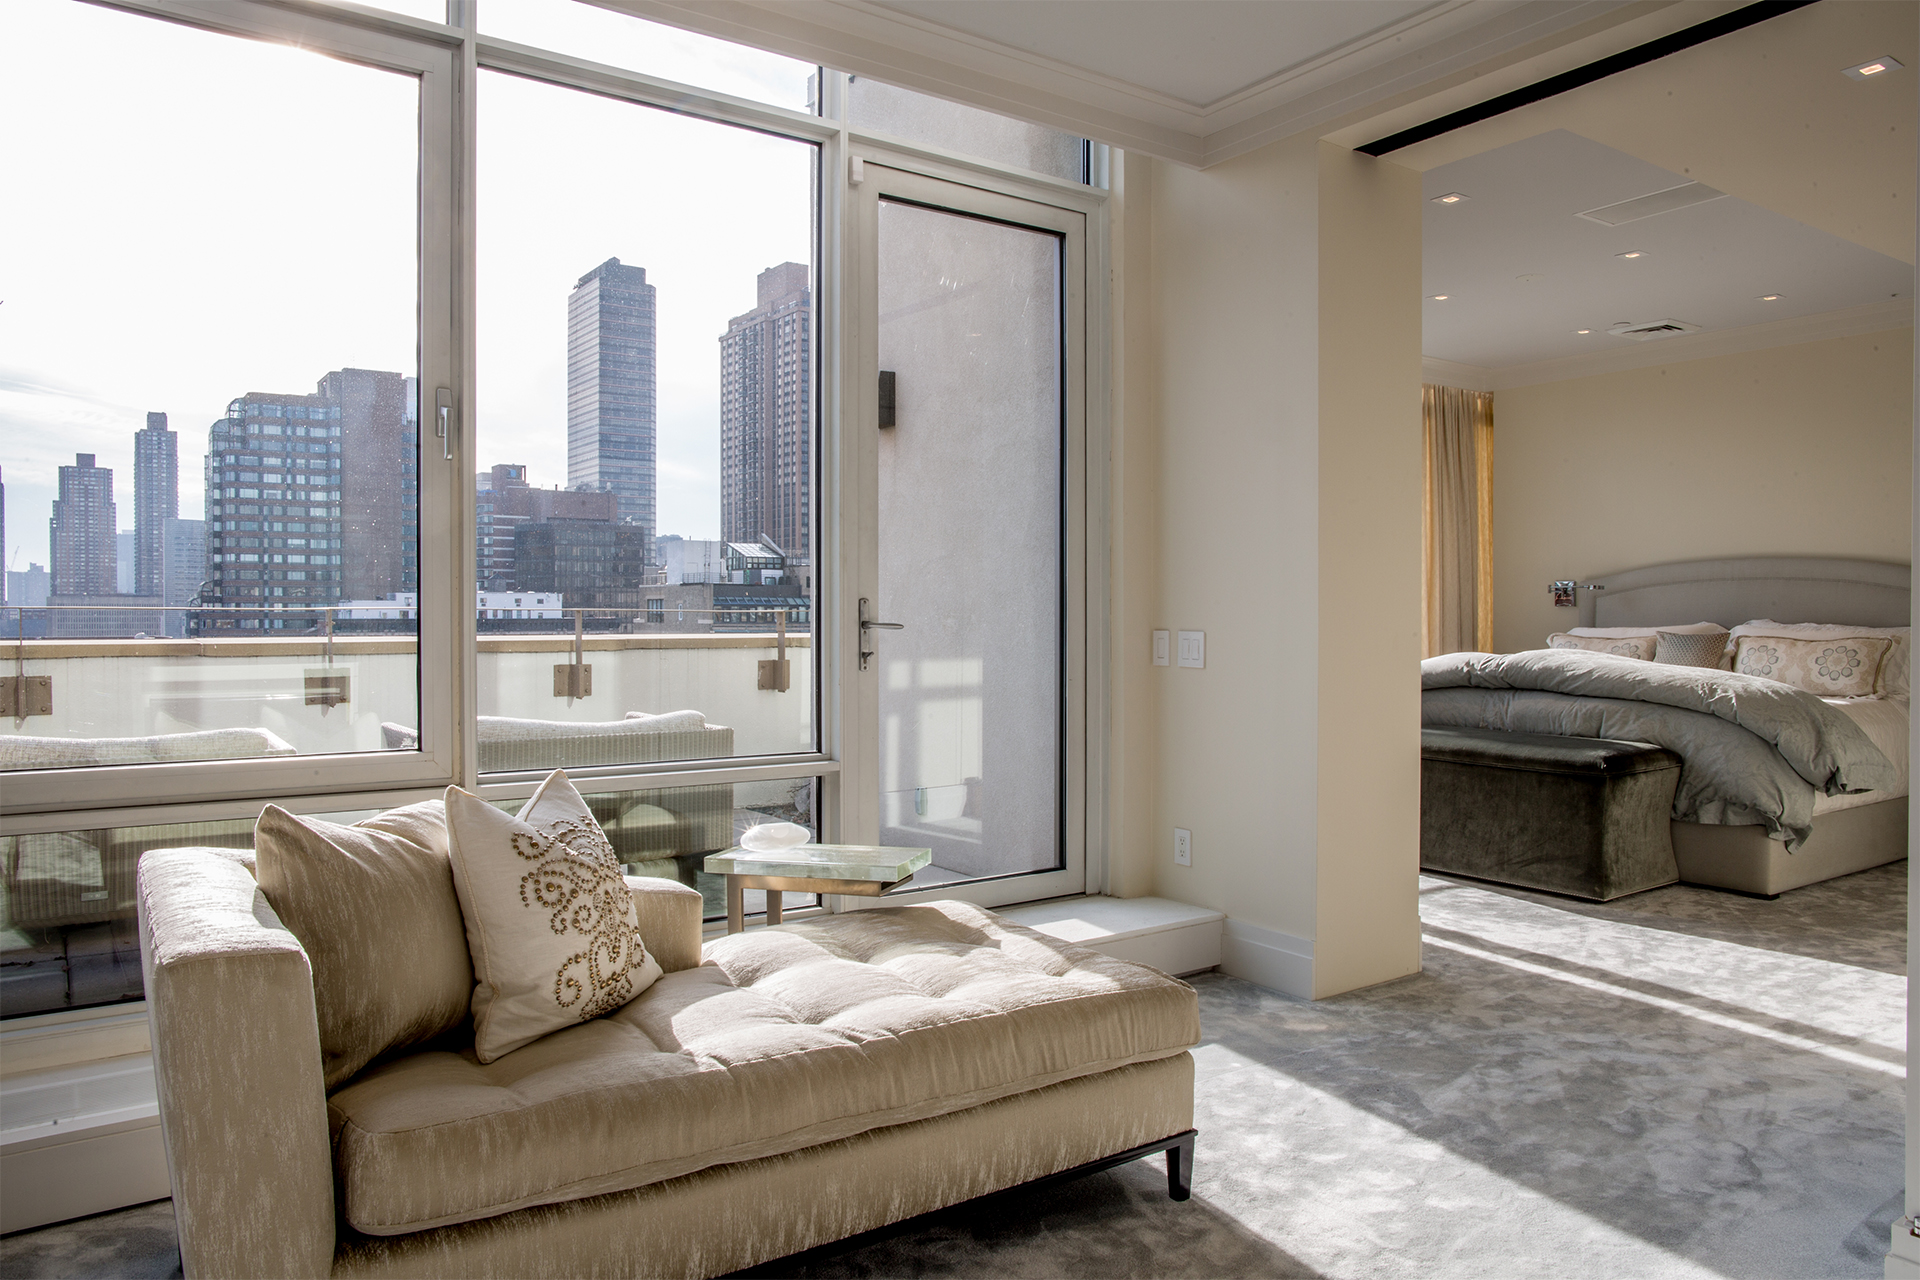 Upper West Side Penthouse Renovation - Master Bedroom